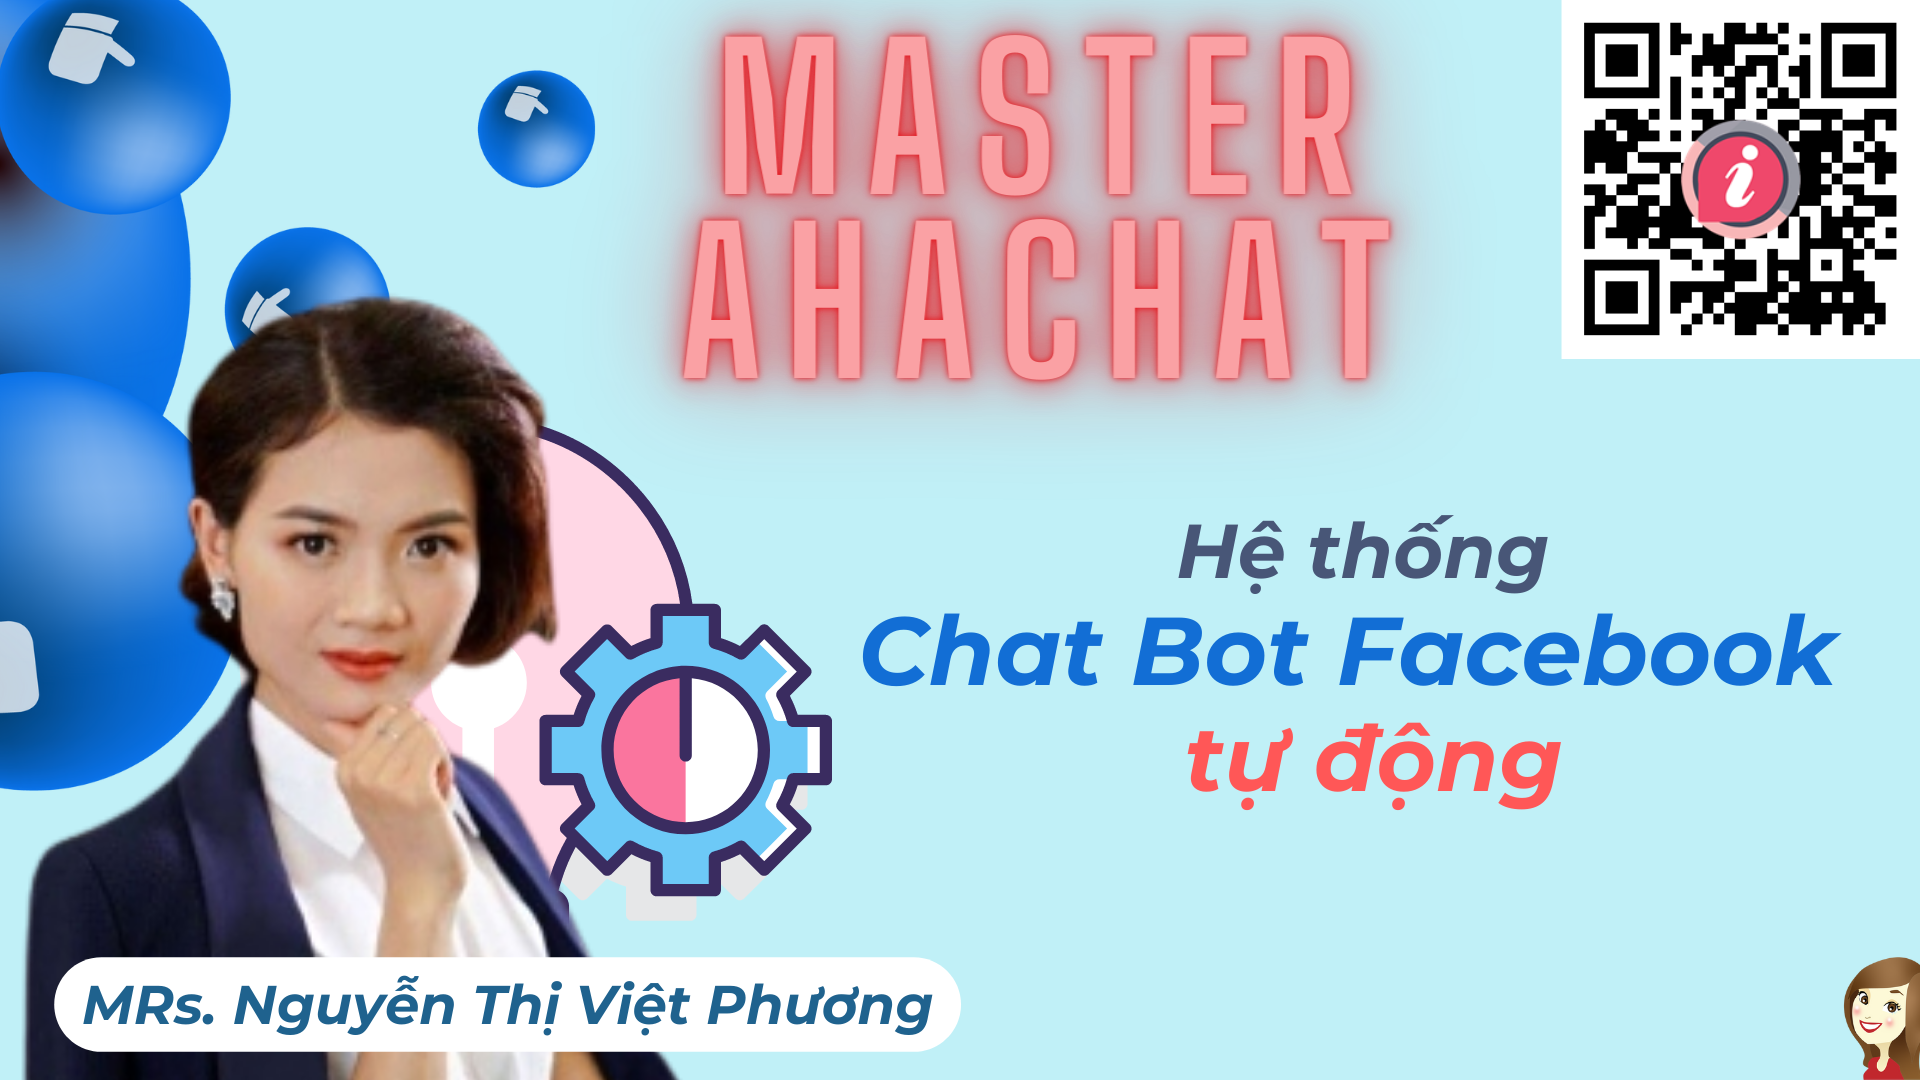 nguyen-thi-viet-phuong-master-ahachat-xay-dung-he-thong-chat-bot-facebook-tu-dong